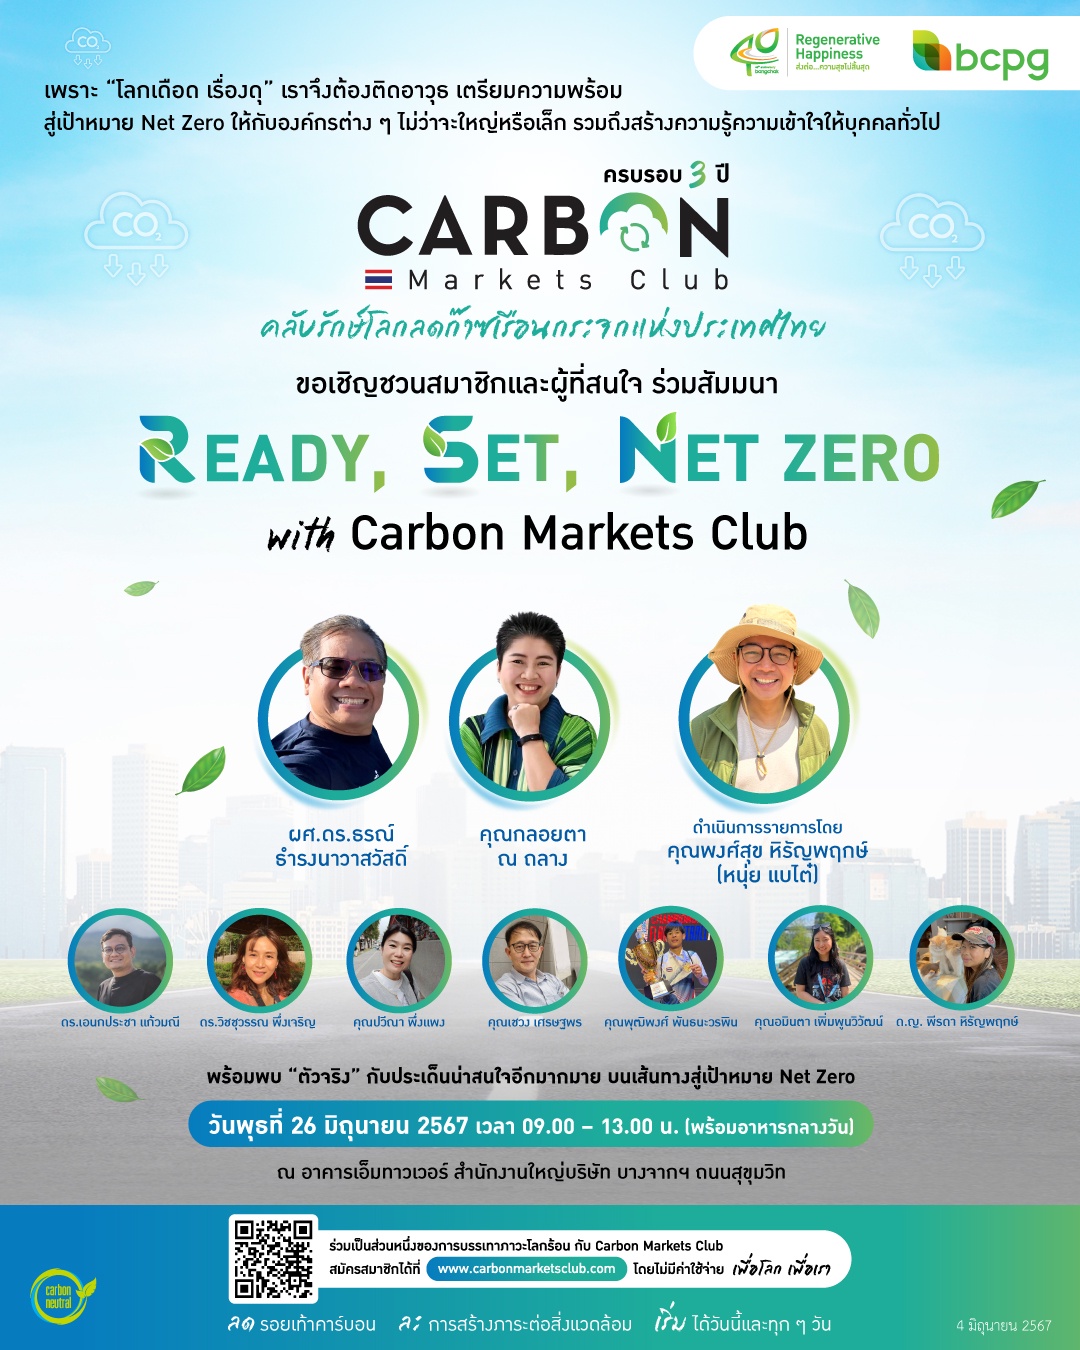 ครบรอบ 3 ปี Carbon Markets Club ชวนรุก รับ ปรับตัว รับมือยุคโลกเดือดในงาน READY, SET, NET ZERO